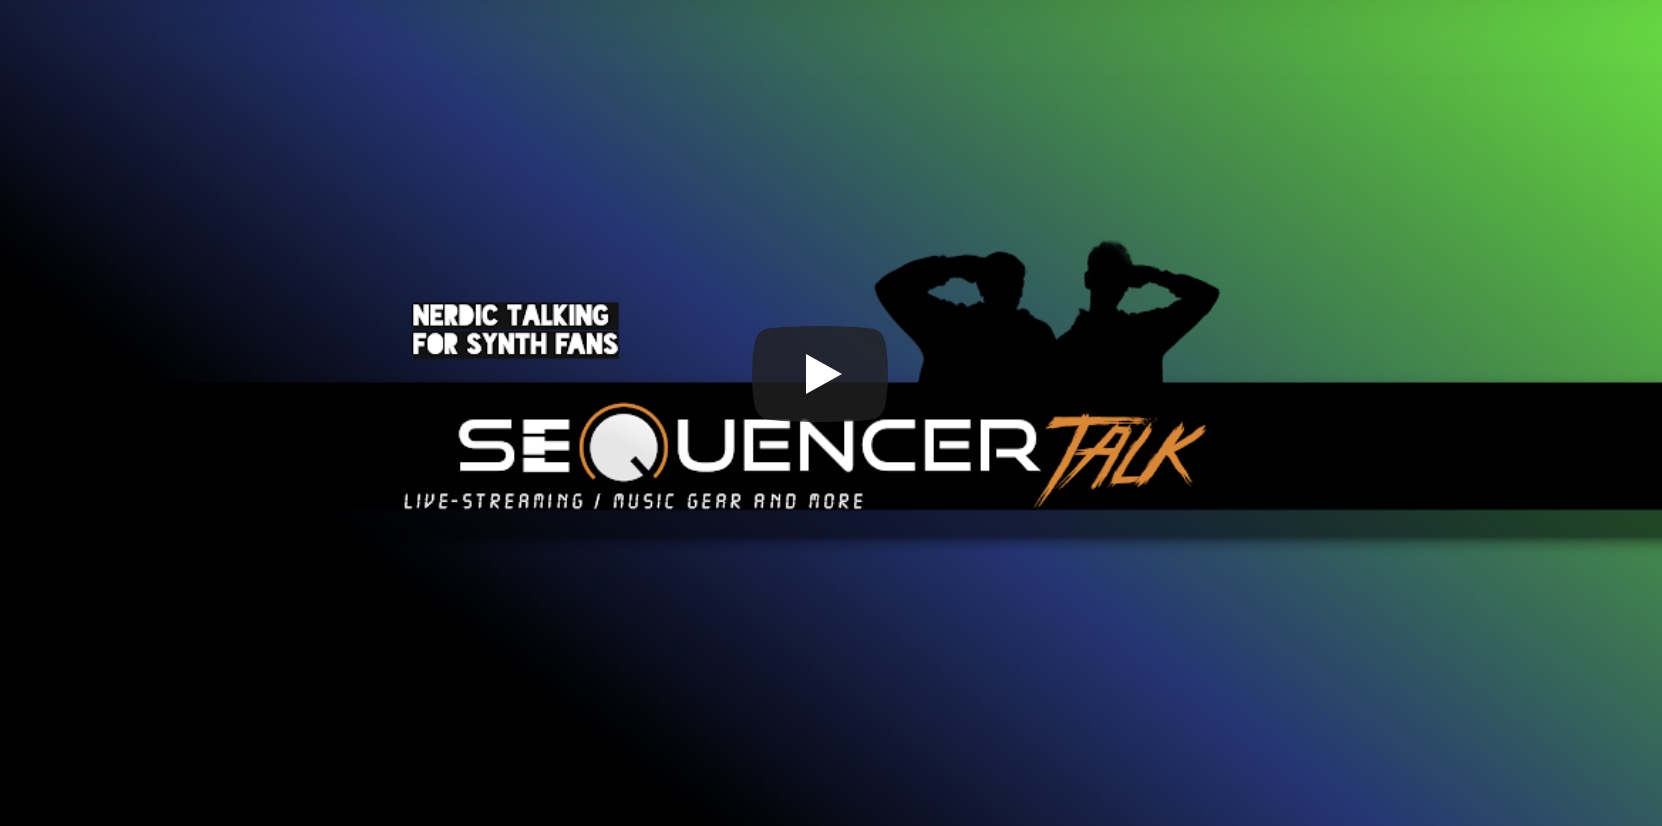 SequencerTalk Videocast Synthesizer auf Youtube